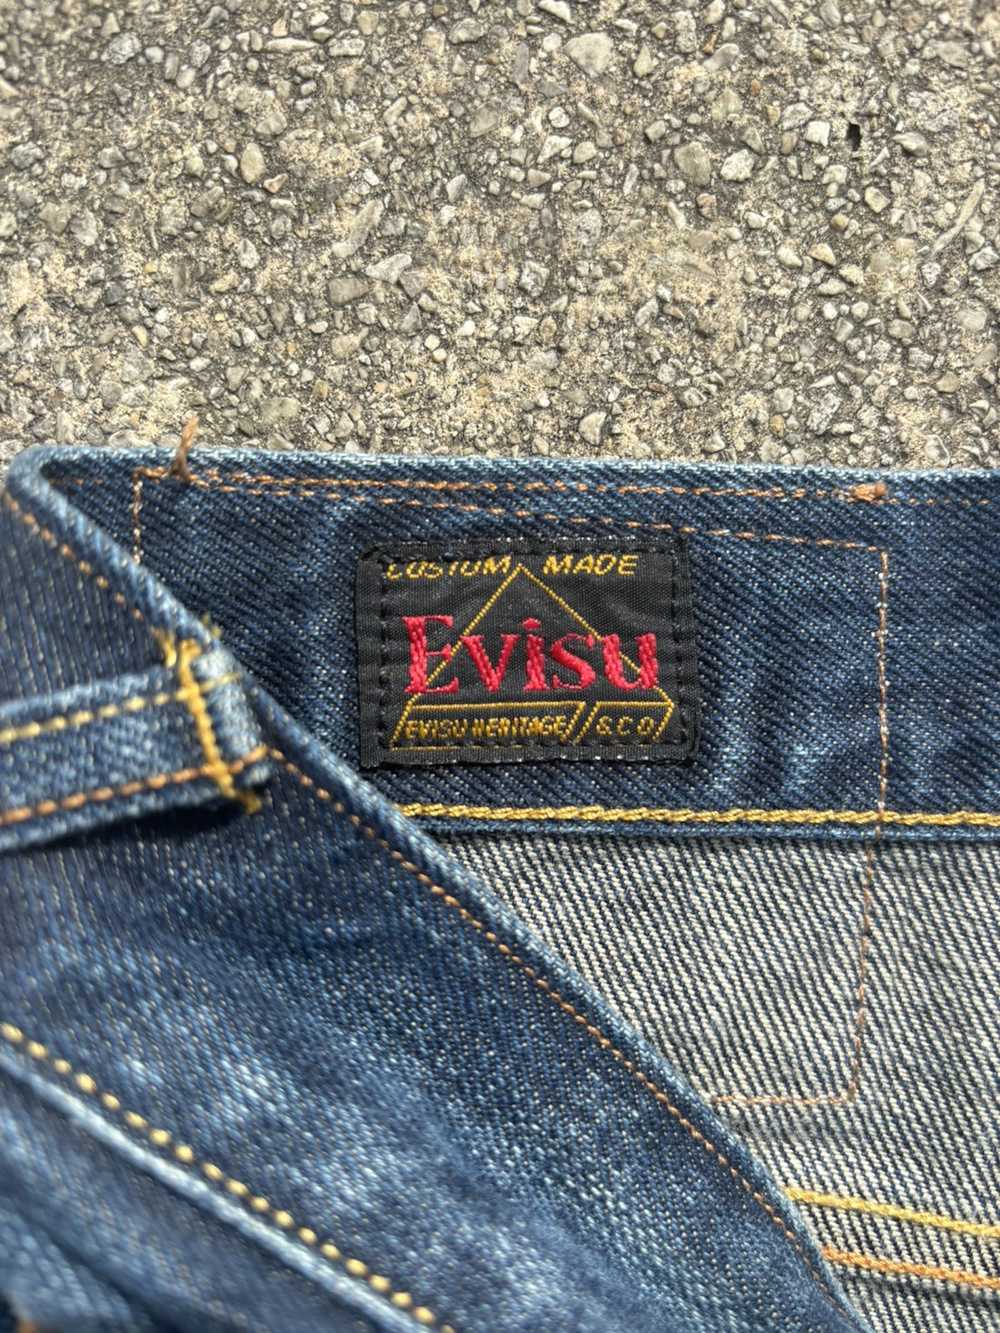 Evisu Evisu No.3 Denim Jeans - image 6